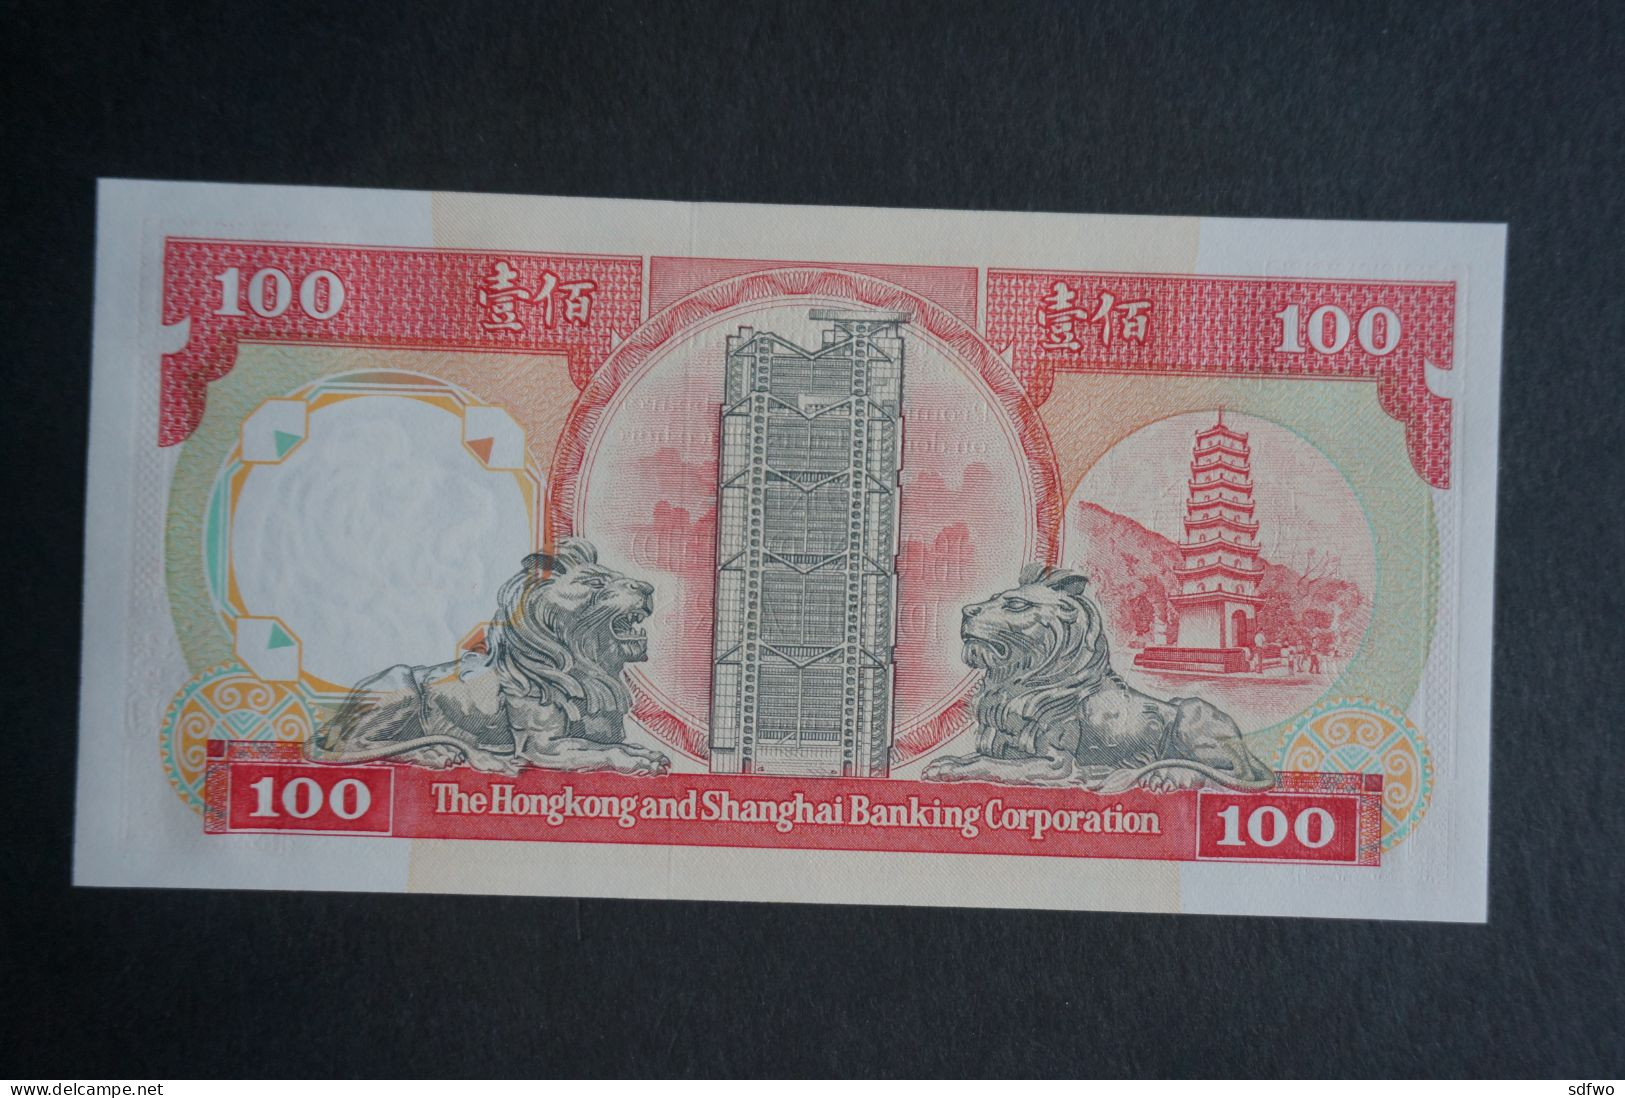 (Tv) 1991 HONG KONG OLD ISSUE - HSBC 100 DOLLARS ($100) Serial No. NN039099 (UNC) - Hong Kong